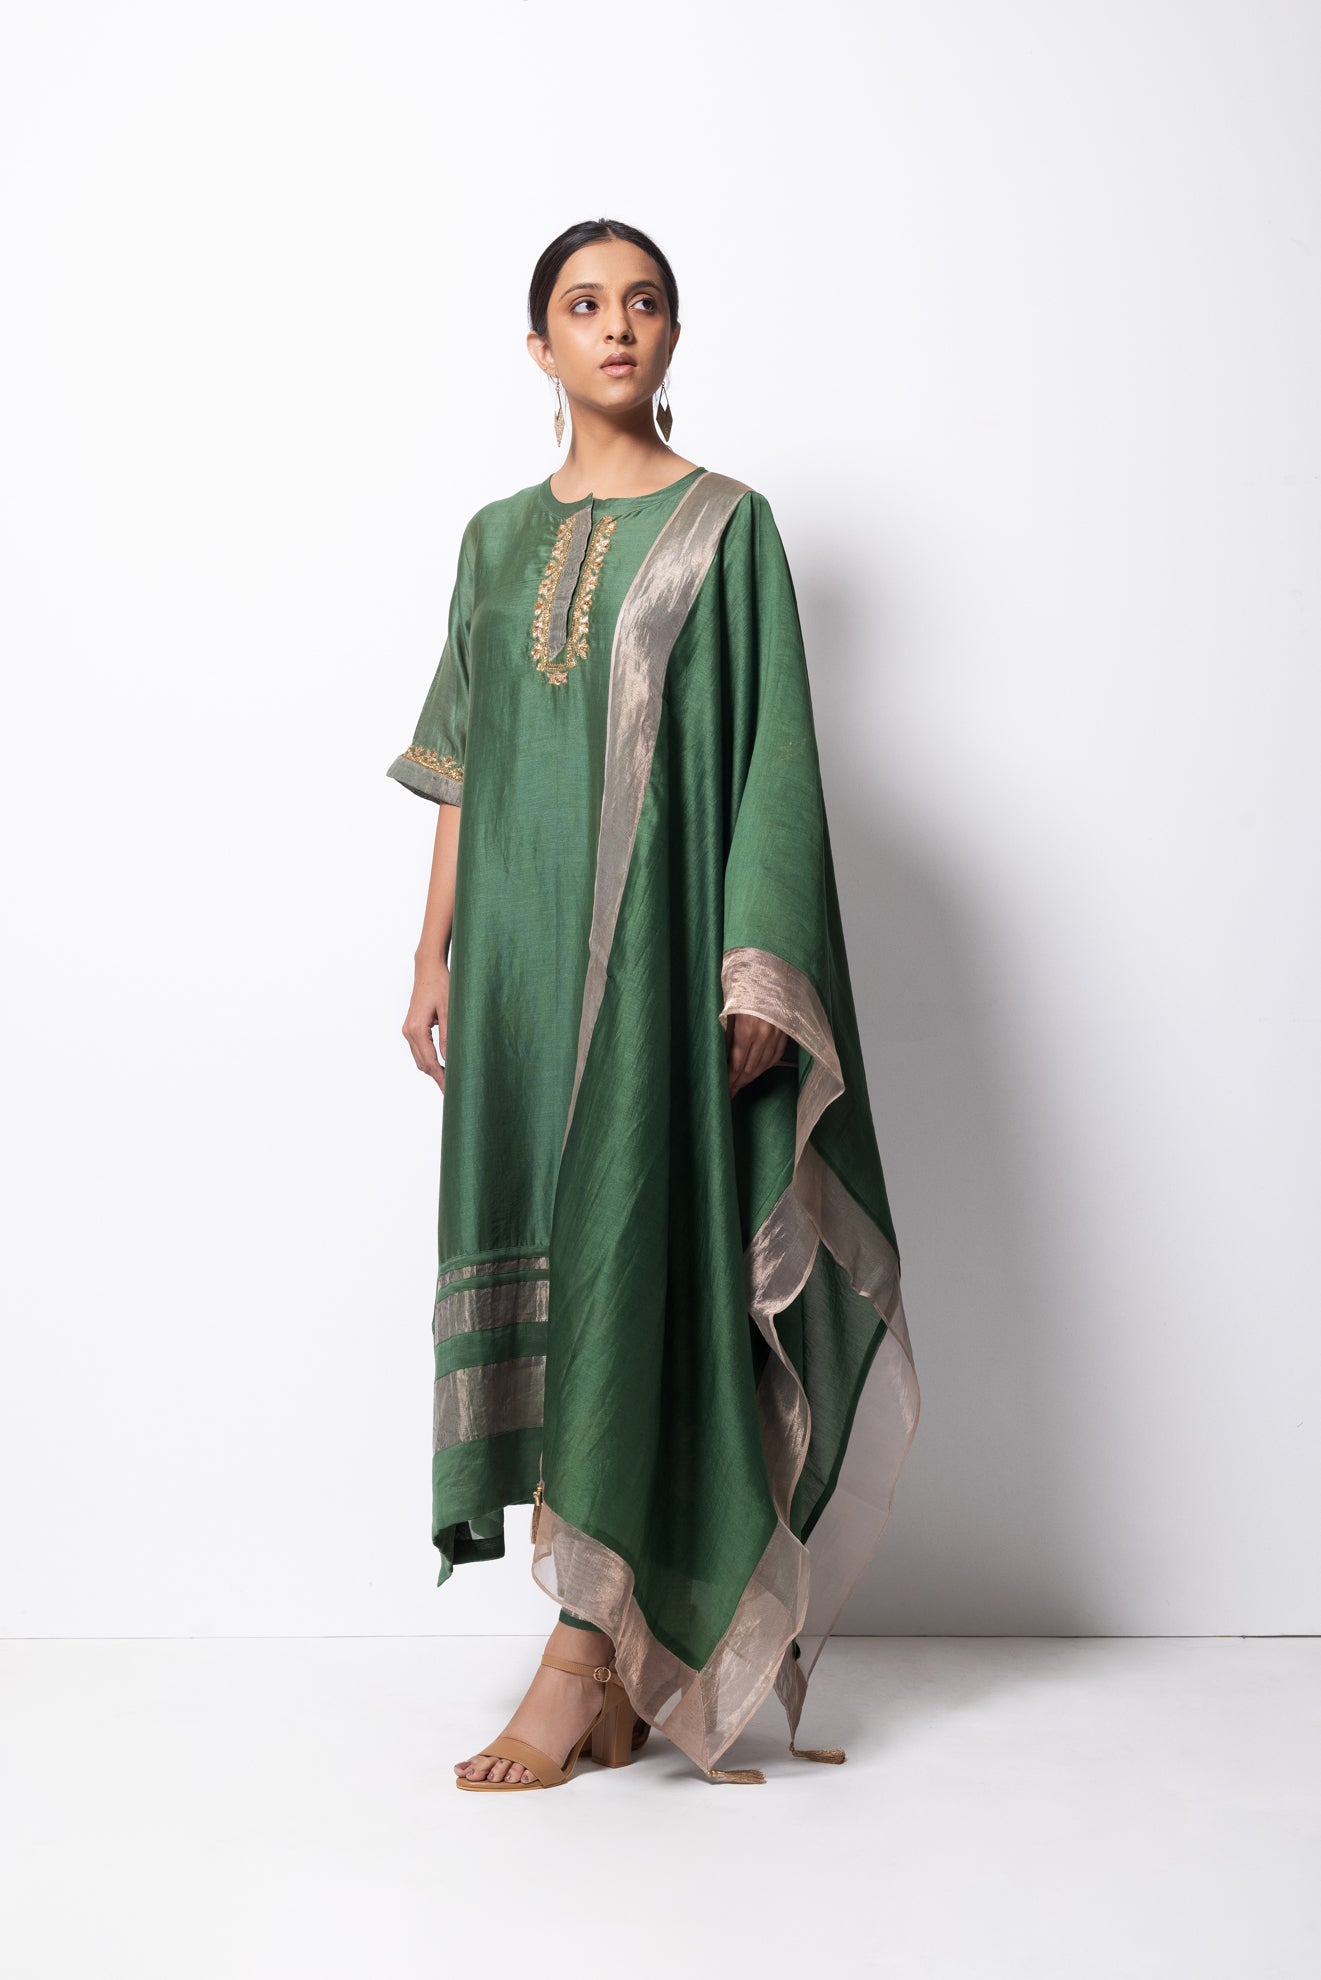 Beryl Green Chanderi Silk Kurta Set with Dupatta - CiceroniBhavik Shah